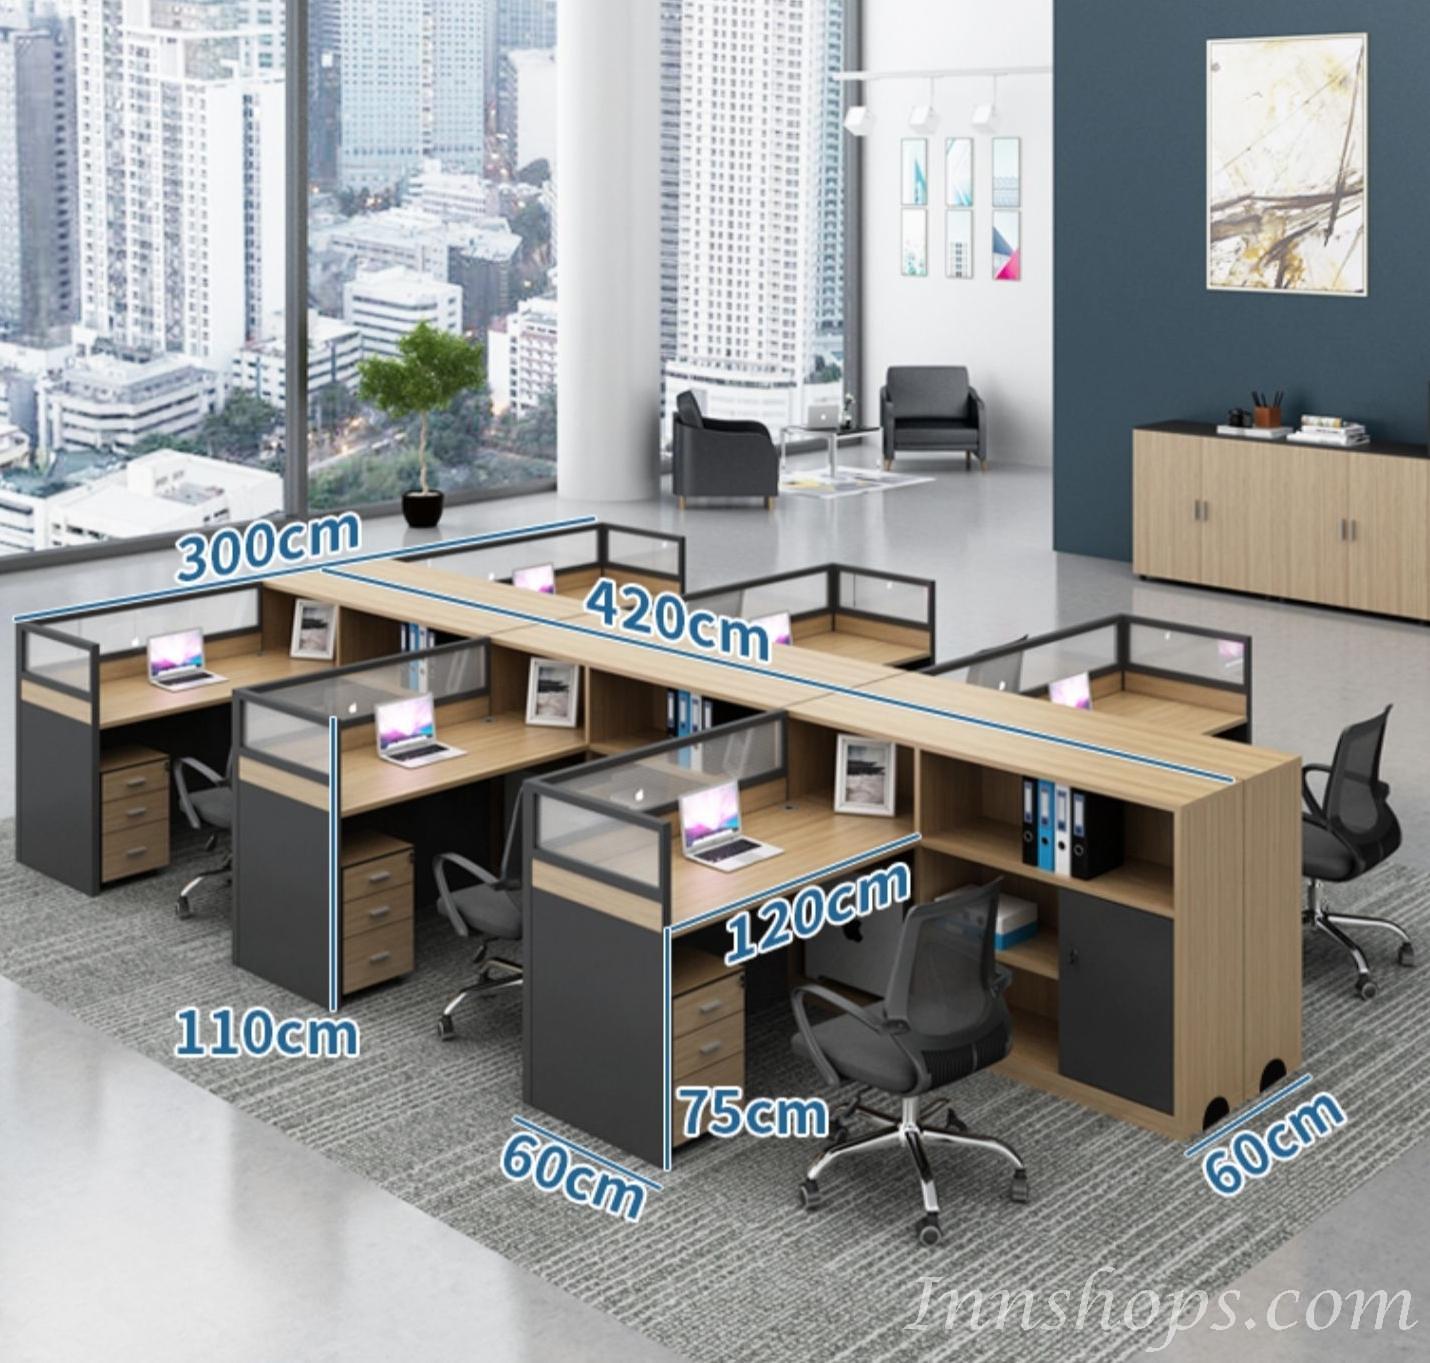 商業客戶訂購產品系列  辦公室傢俬 桌椅組合(IS6786)